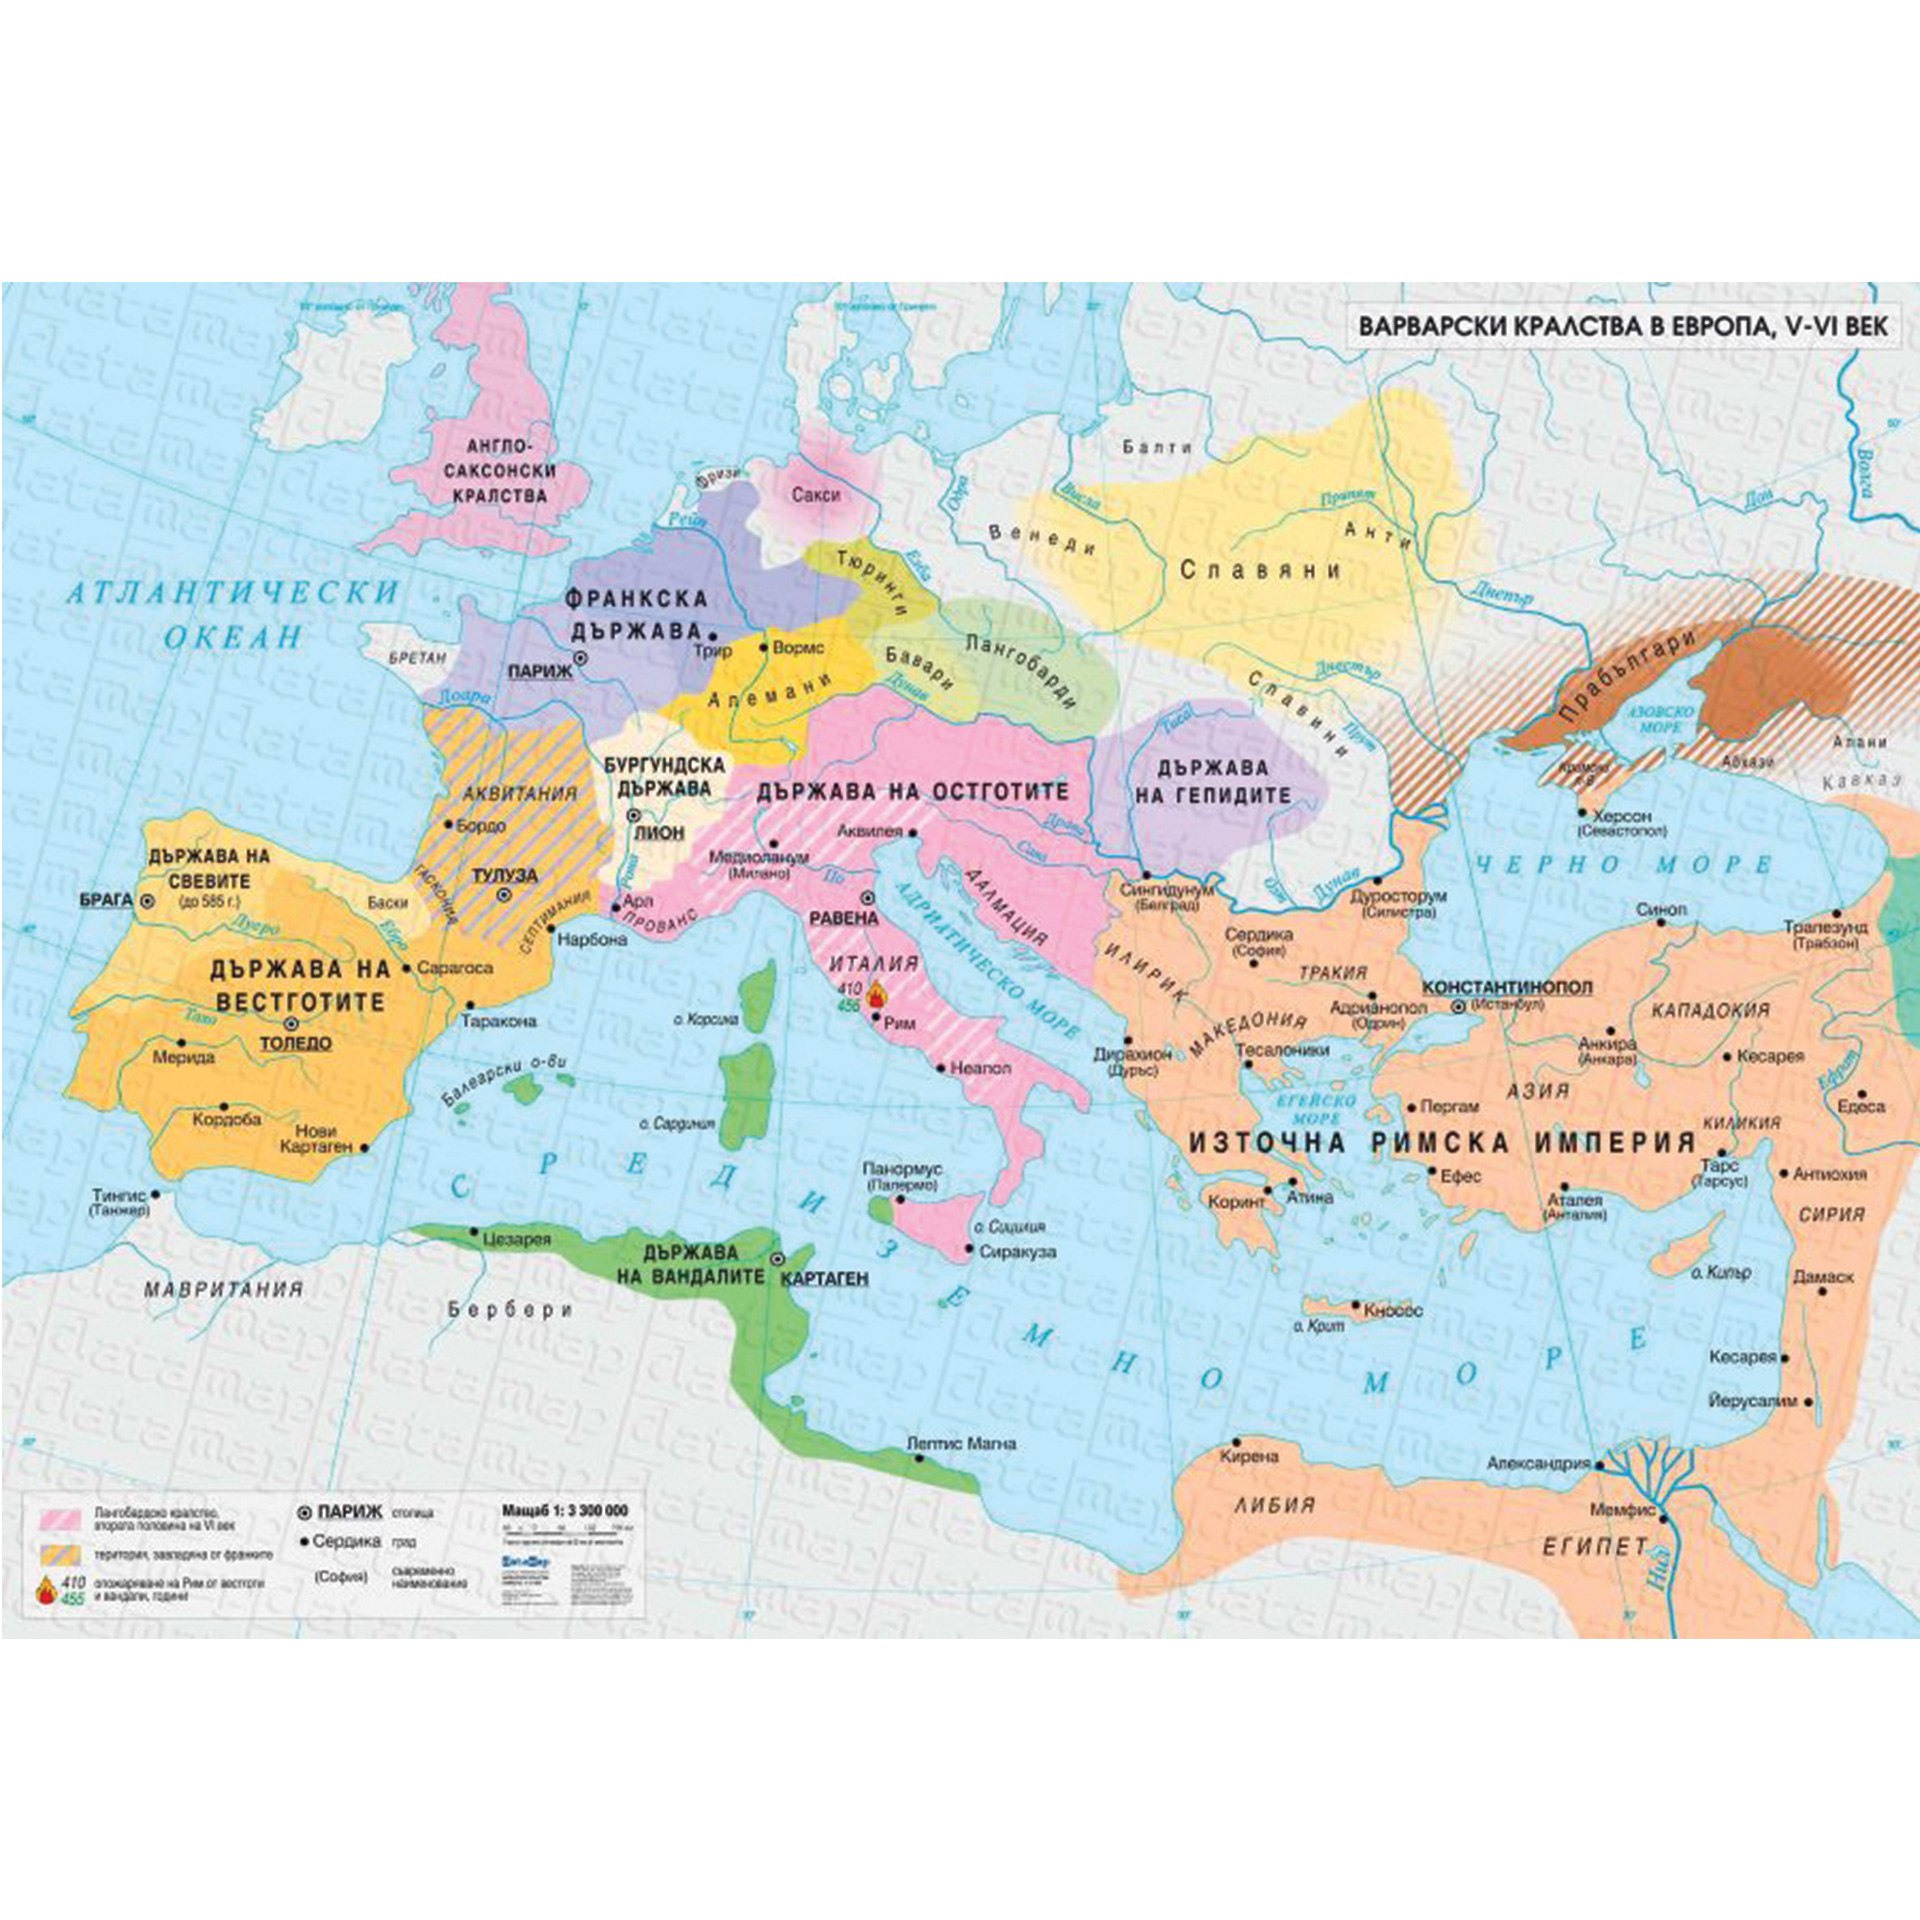 5 6 век до нашей эры. Карта Европы 2 века до нашей эры. Карта Европы в 5 веке нашей эры. Племена Европы 6 век. Карта Европы 5 века нашей эры.